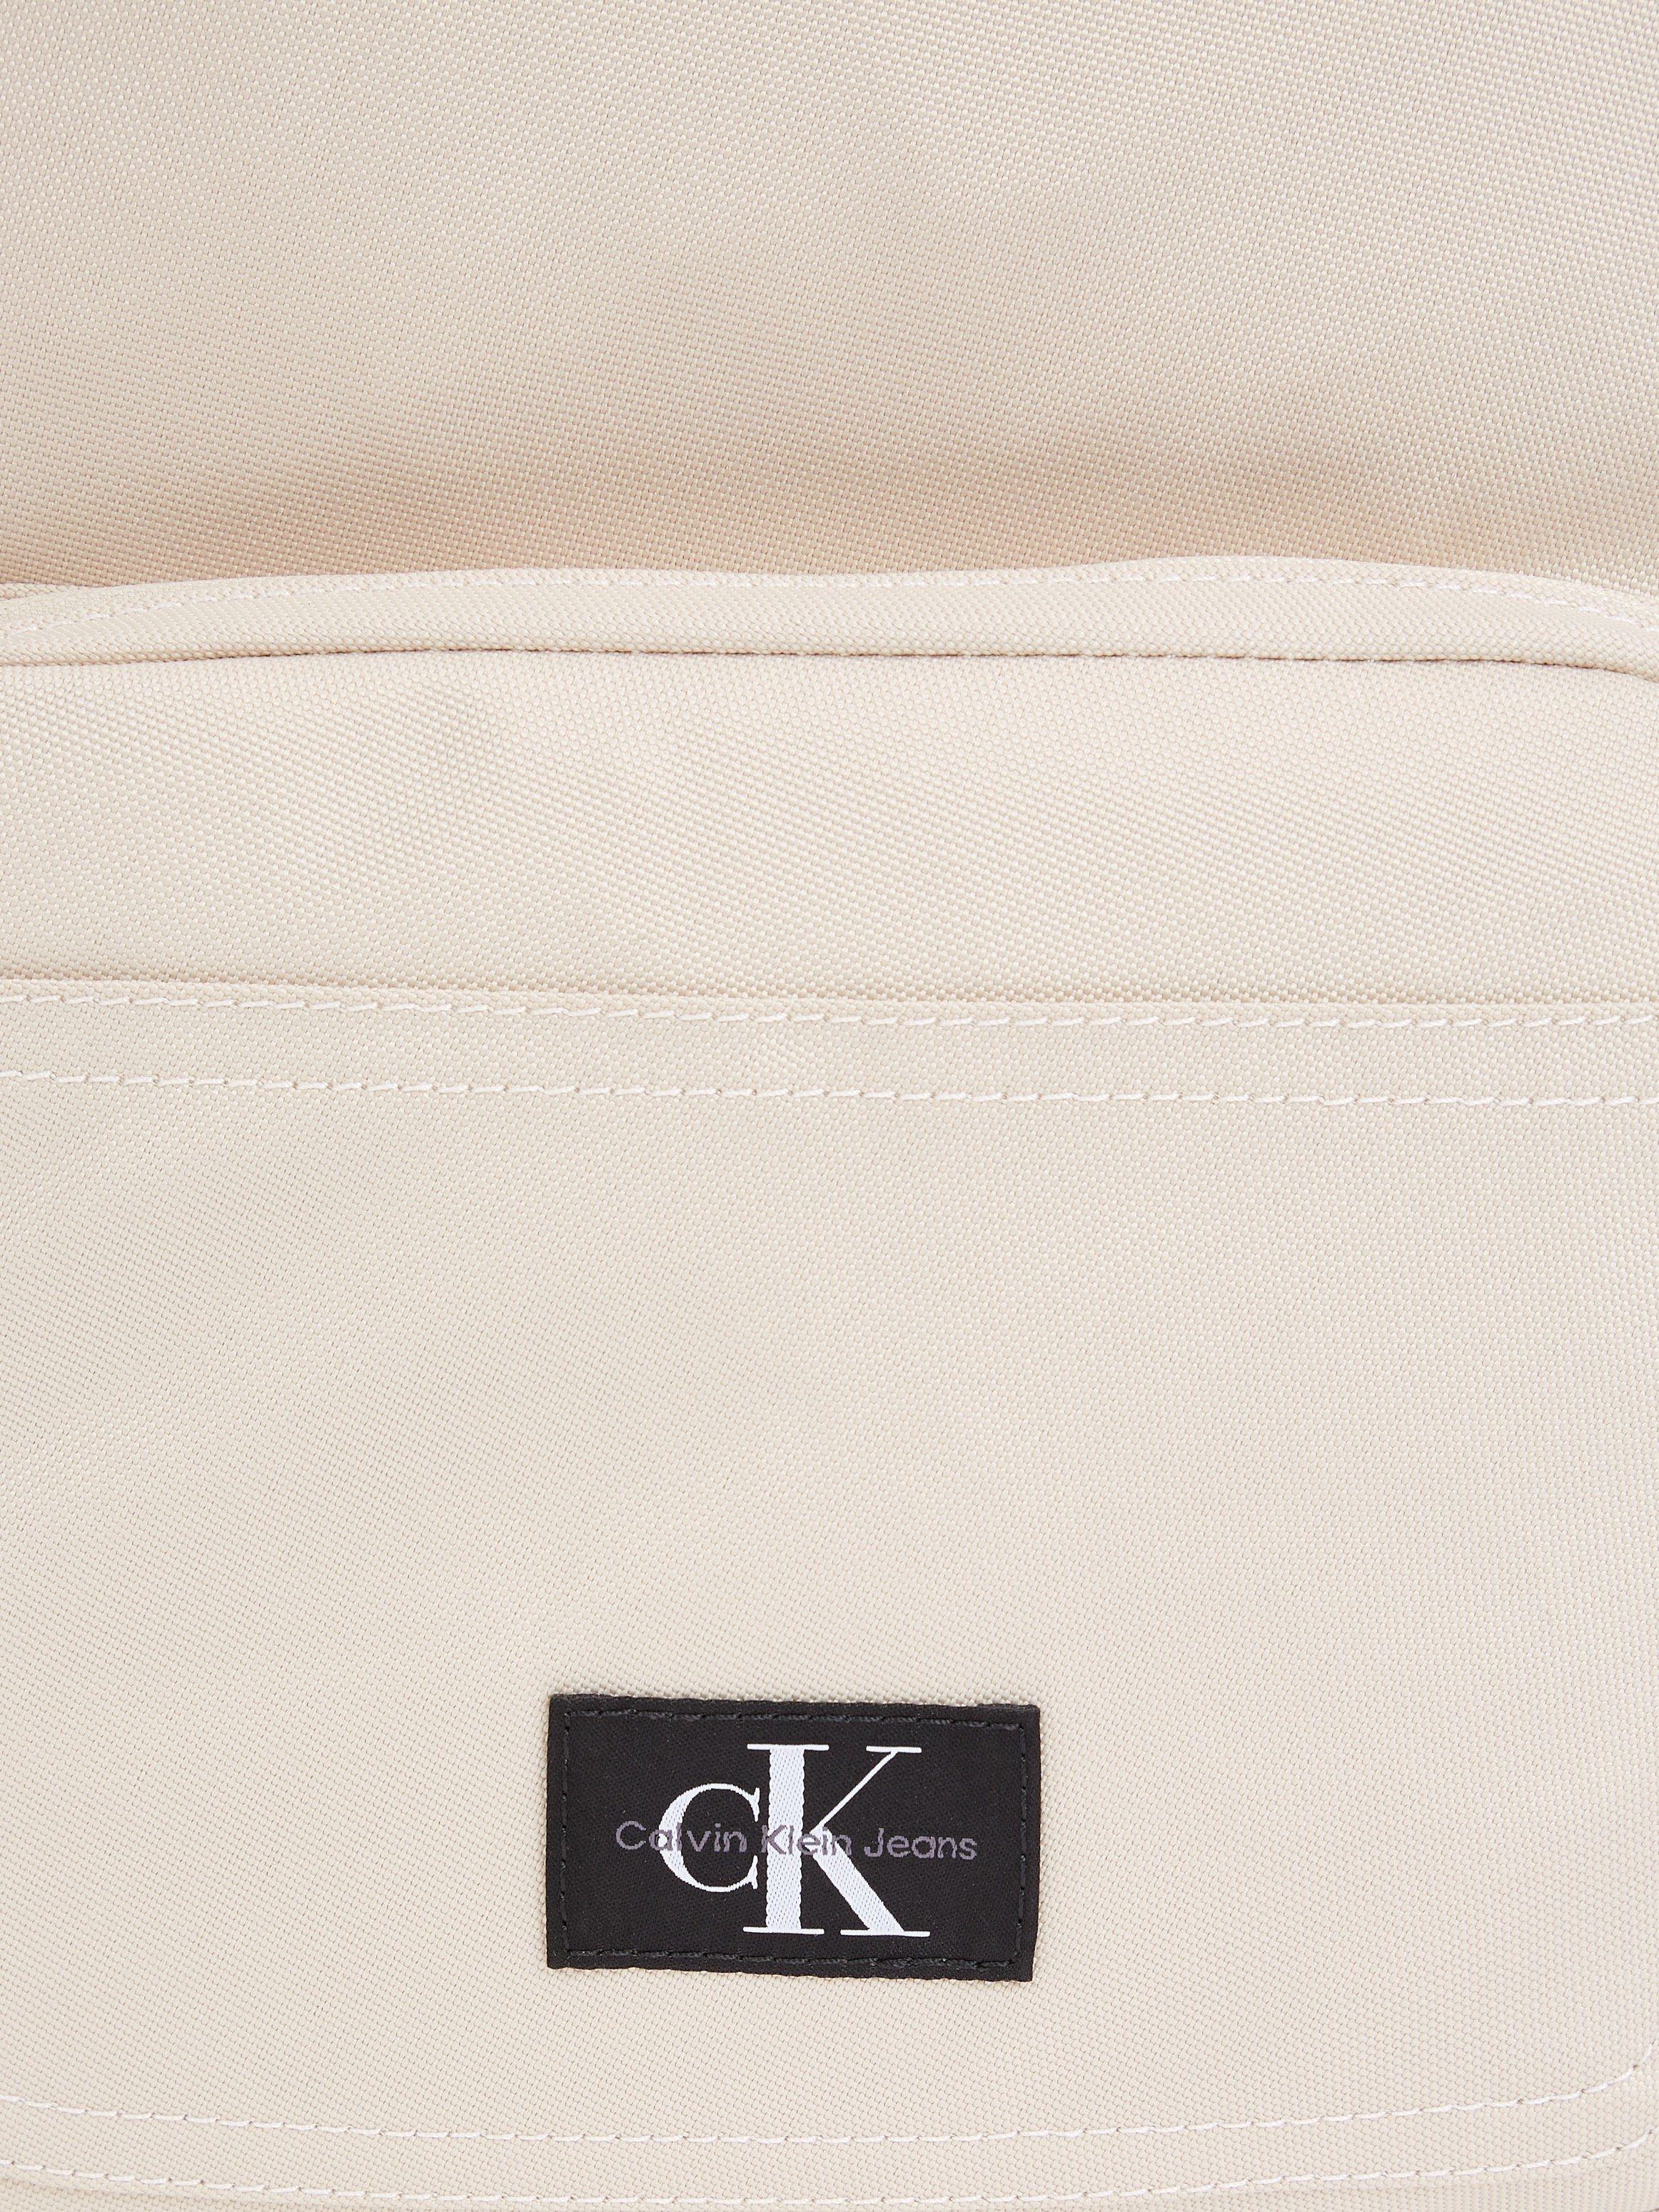 Design SPORT dezentem in Cityrucksack Jeans W, beige Klein ESSENTIALS CAMPUS Calvin BP40